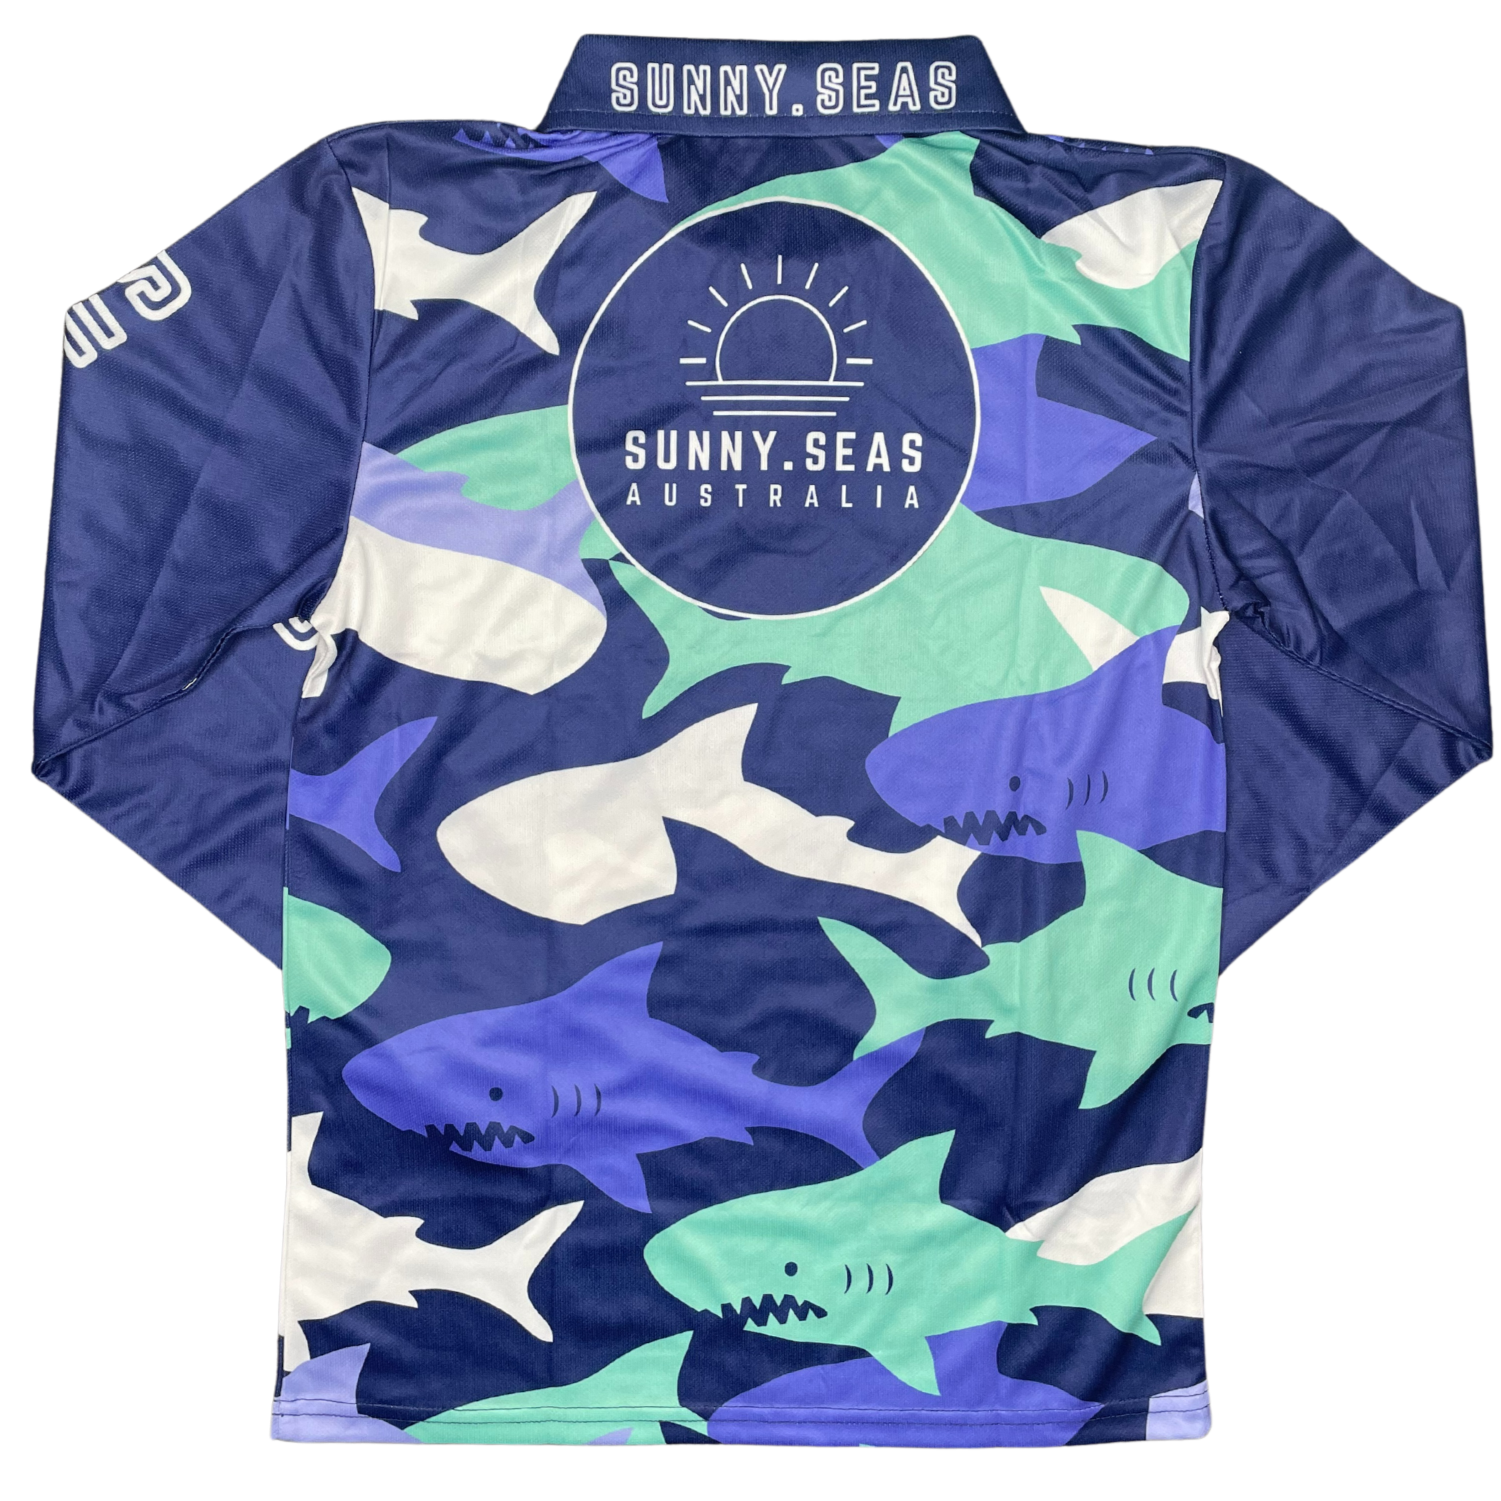 Offshore Fish UV Shirt - Kids – Moss & Marsh